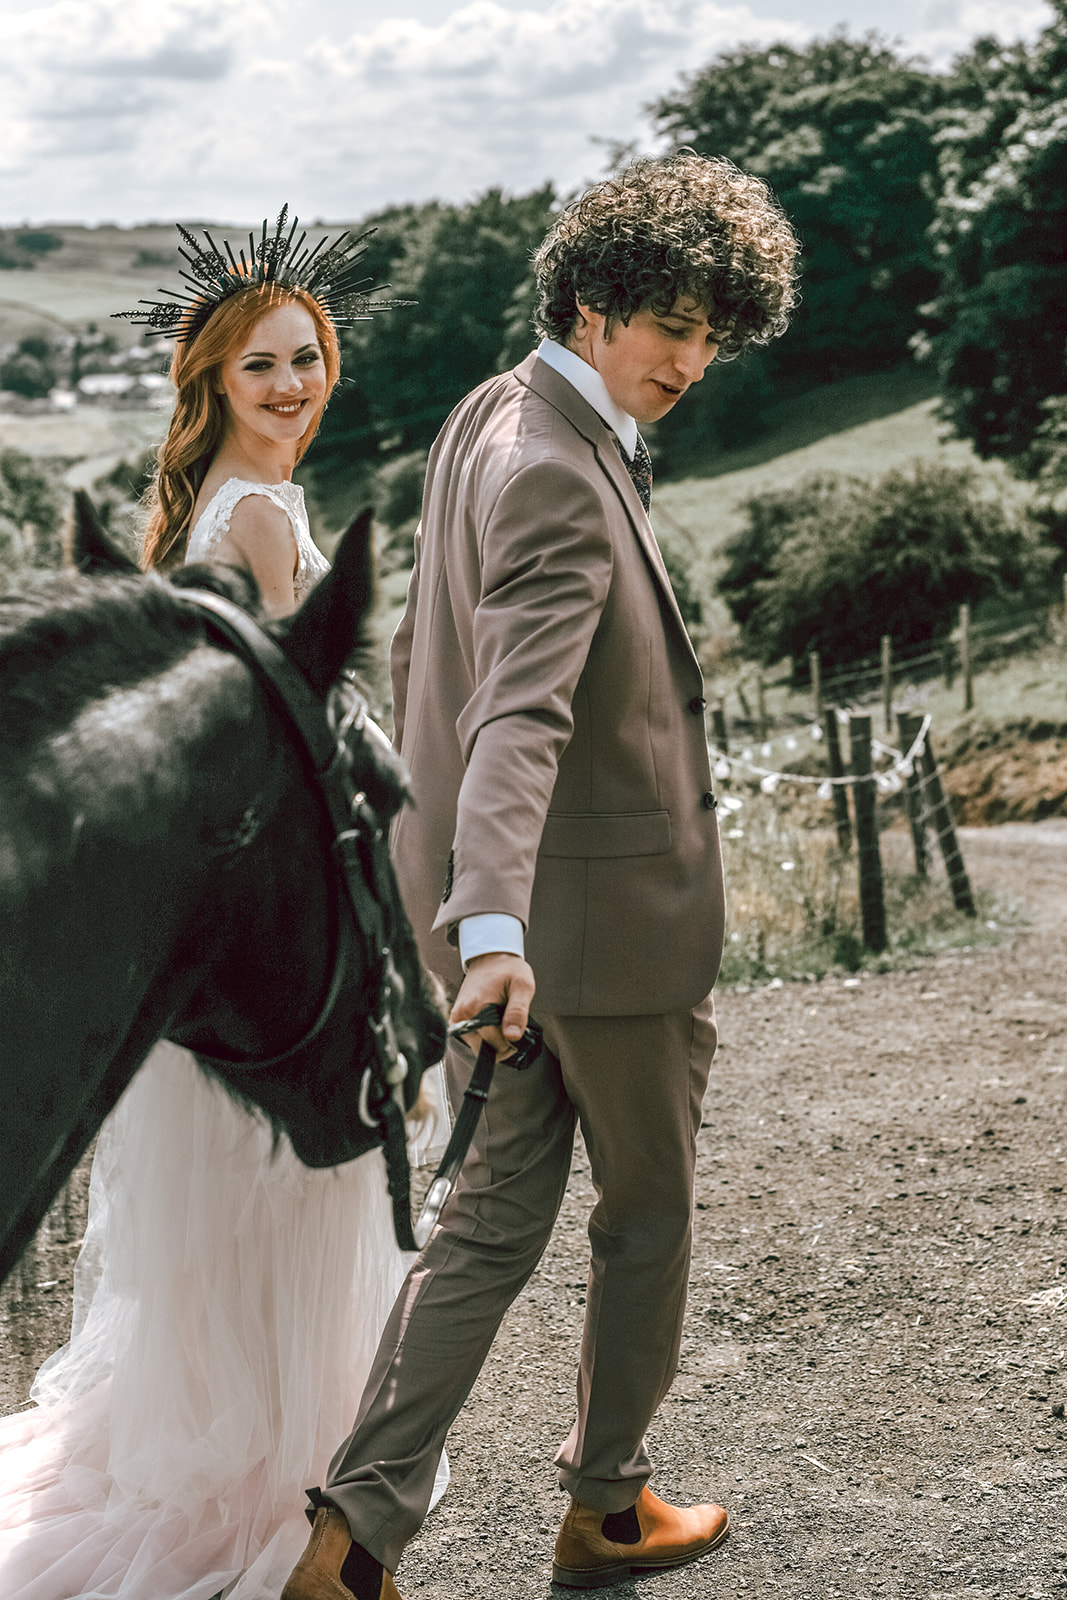 rustic festival wedding - wedding horse - boho outdoor wedding - farm wedding